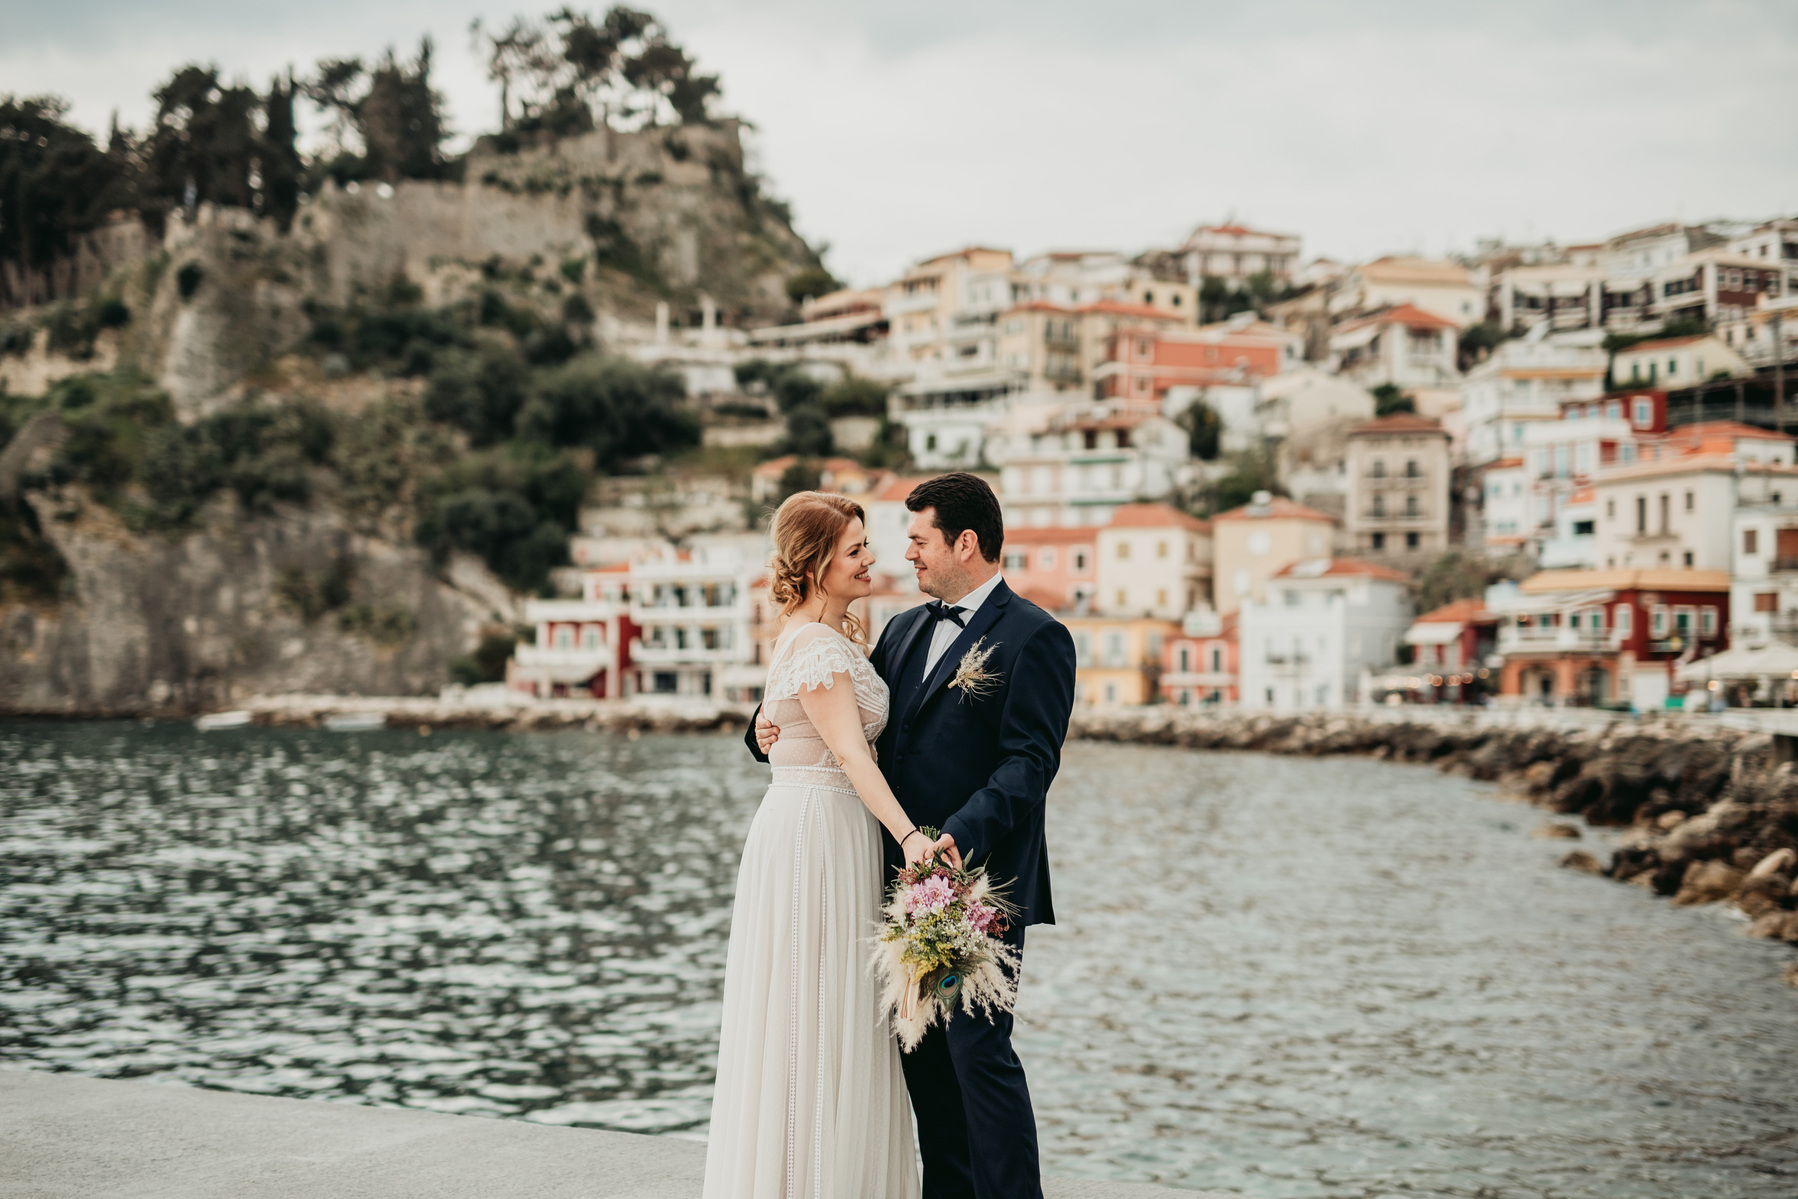 Destinationsbröllop i Parga Grekland, romantisk destination för din bröllopsfest.
